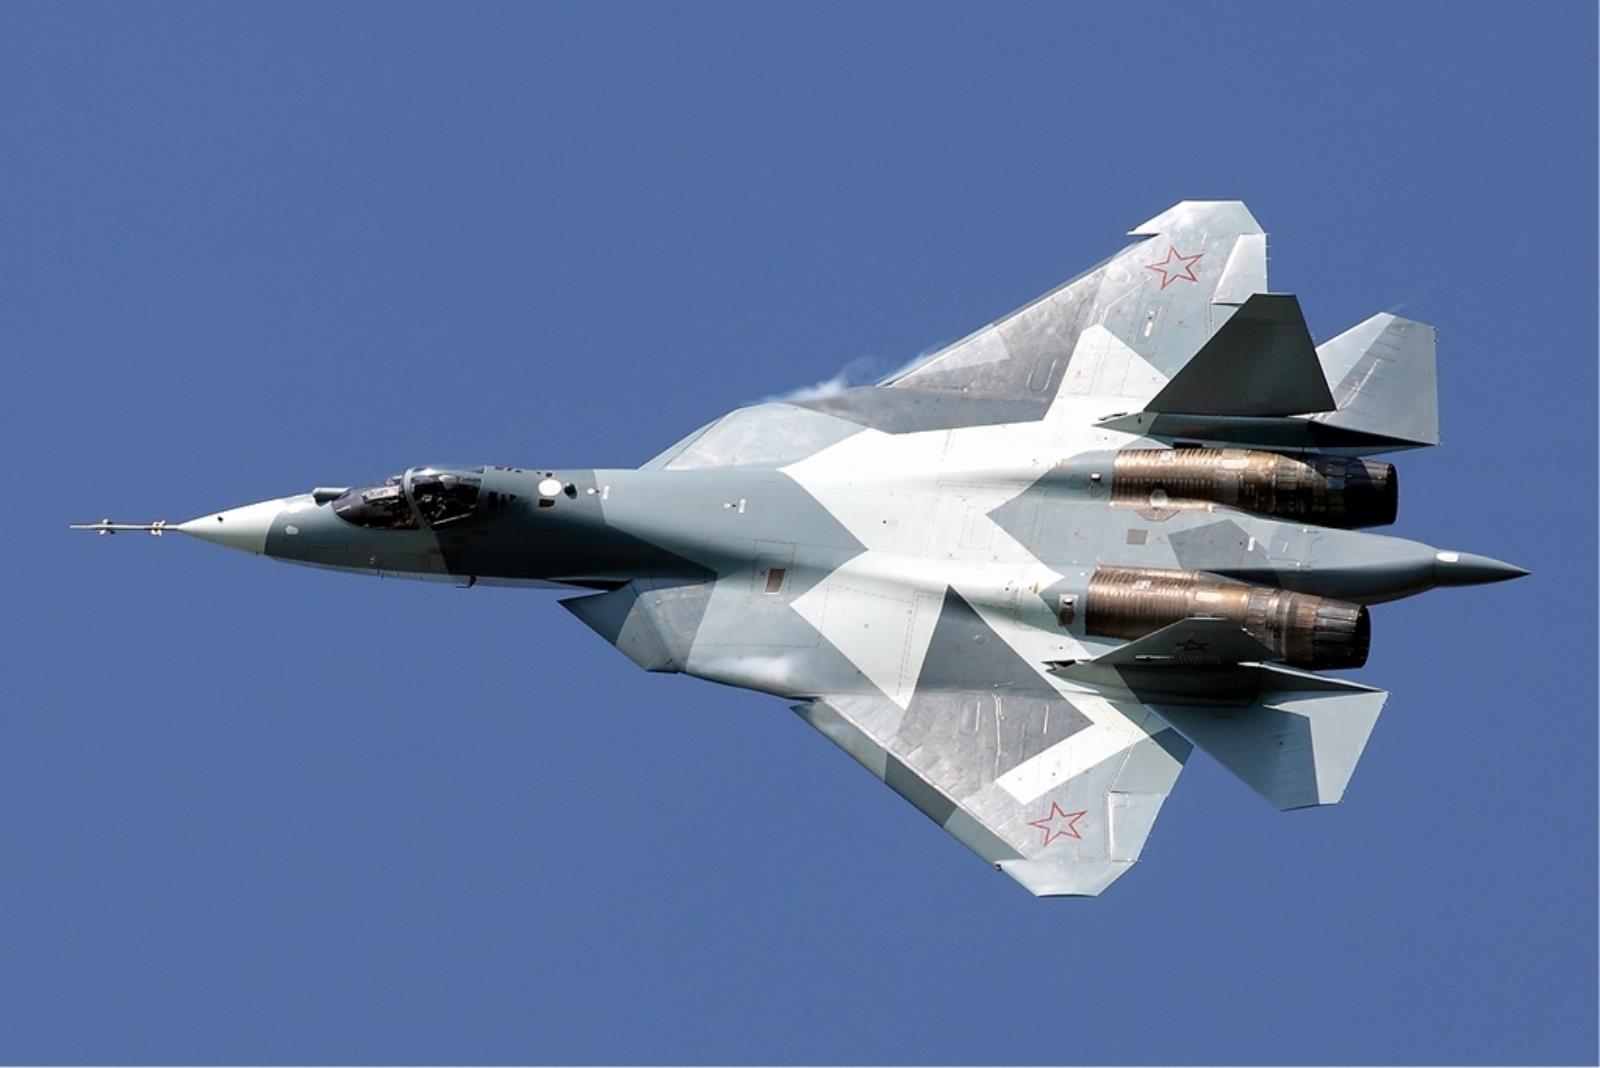 Ma dorównywać najlepszym myśliwcom świata. Ulepszony rosyjski Su-57 wzniósł się w przestworza